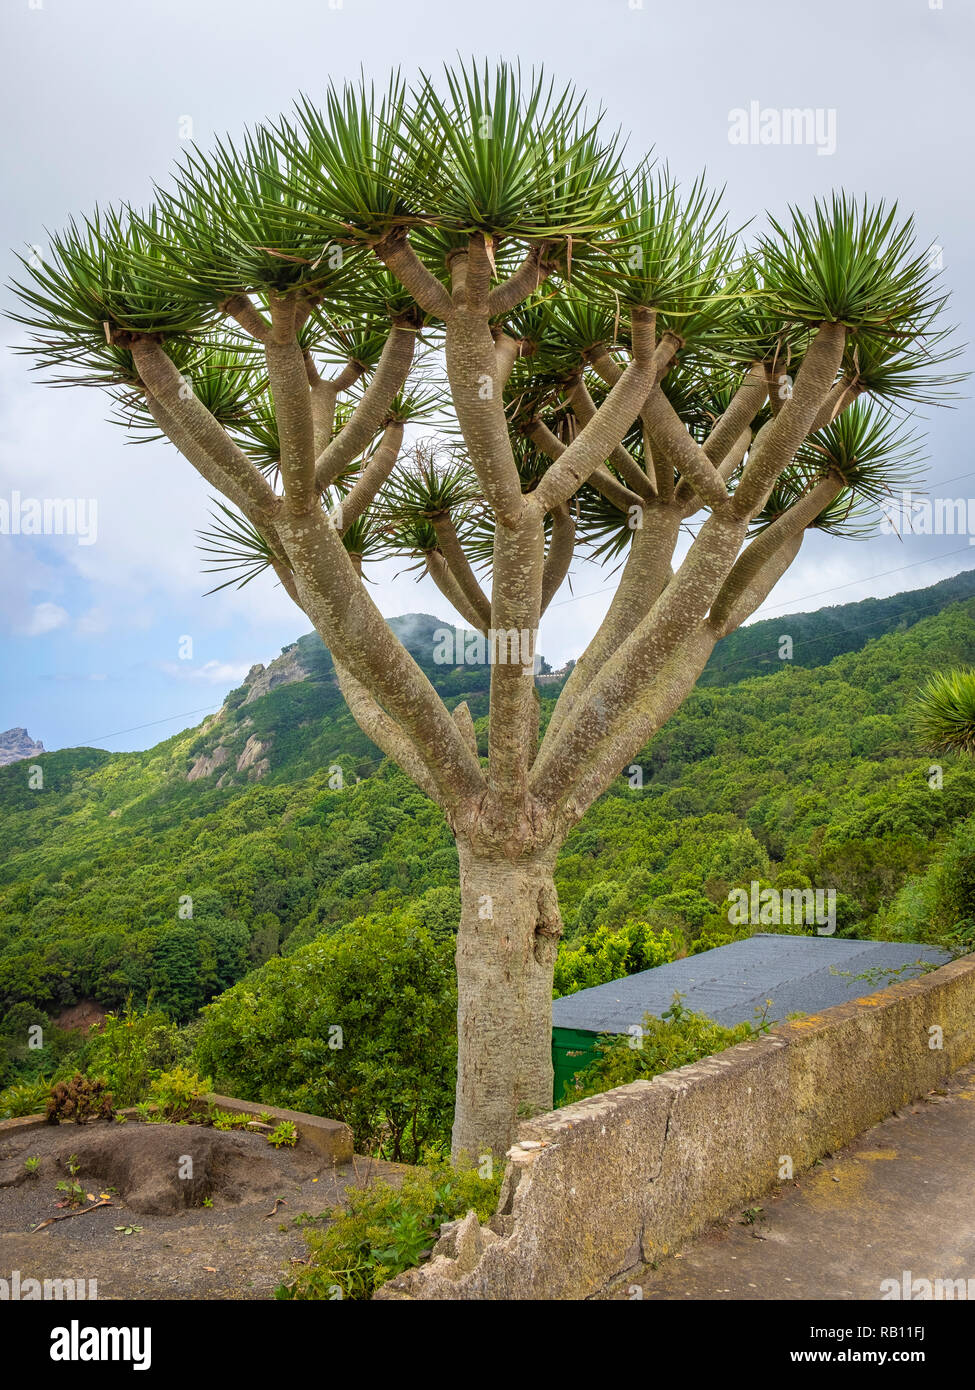 Drachenbaum auf Teneriffa, Spanien Foto Stock